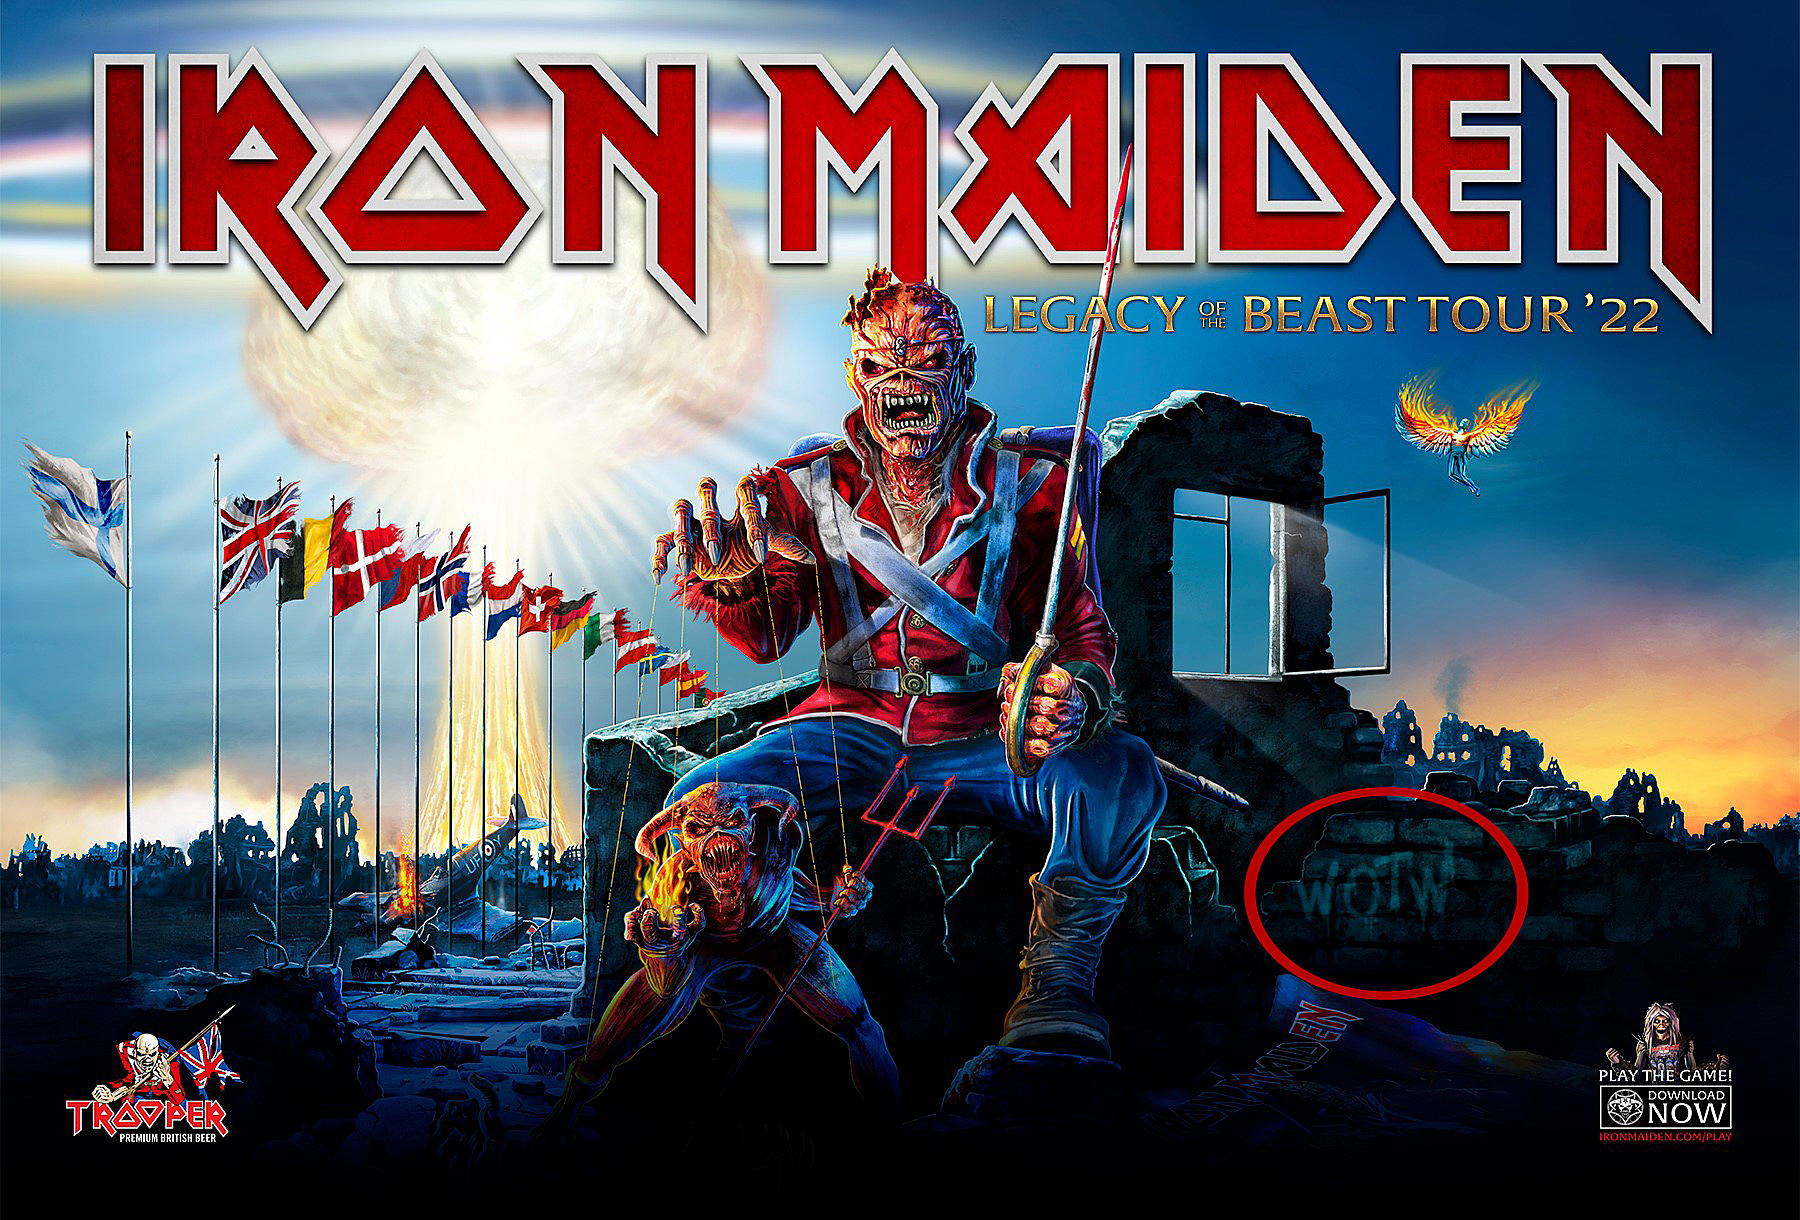 Iron Maiden Album Covers For Jam